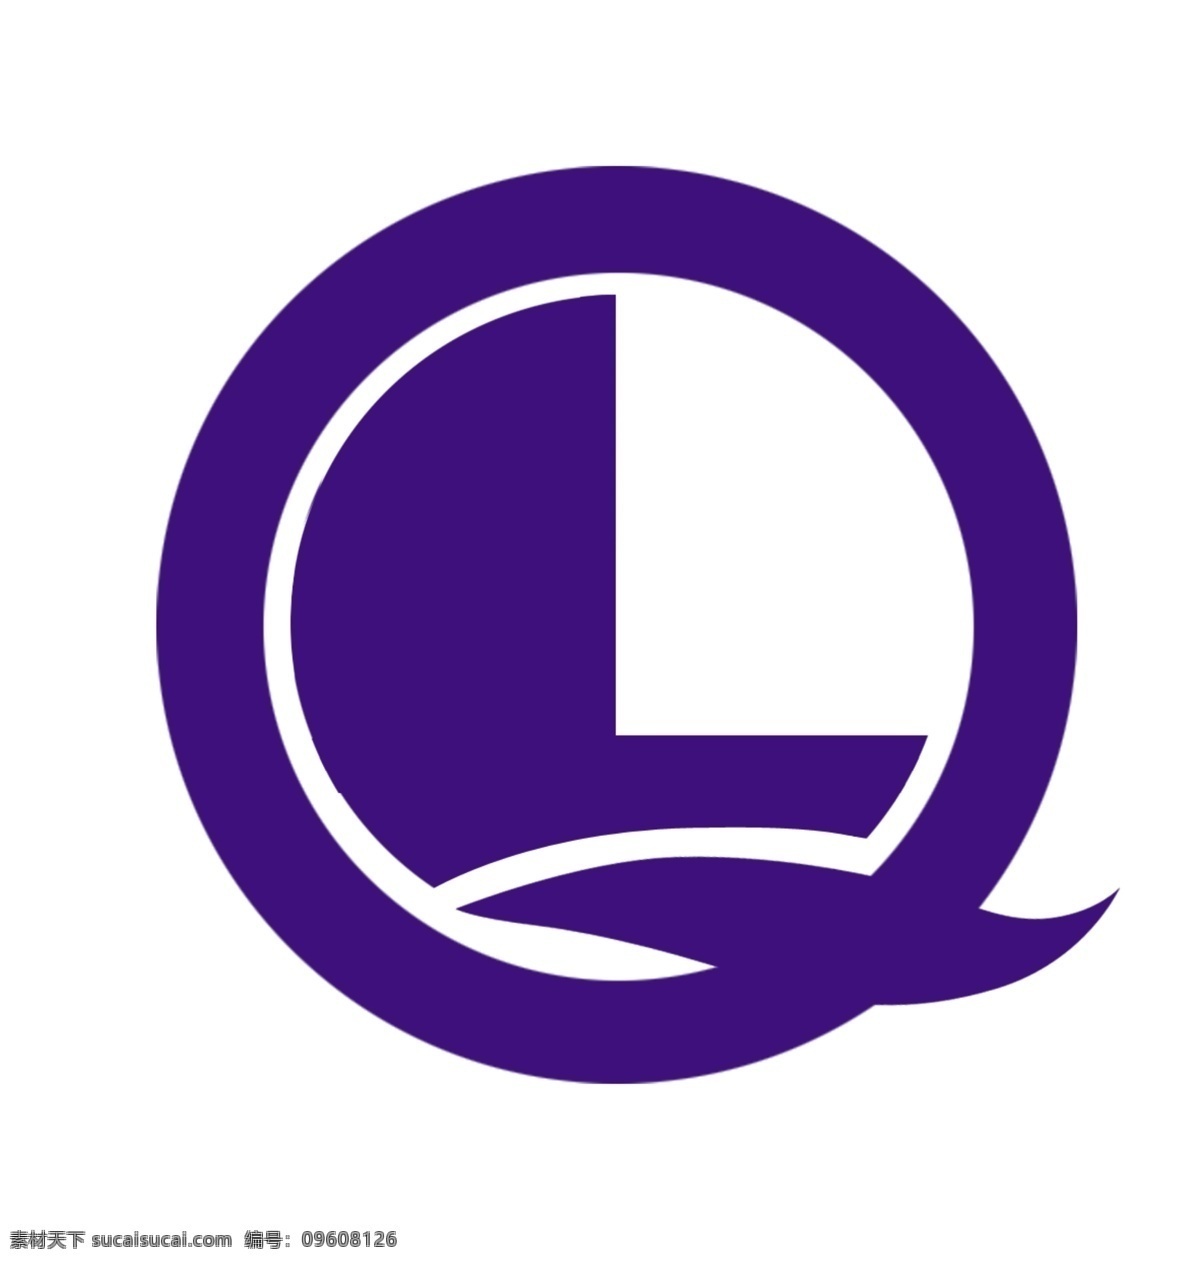 鲁泉商标 l q 品牌的标志 标志设计 广告设计模板 源文件 白色